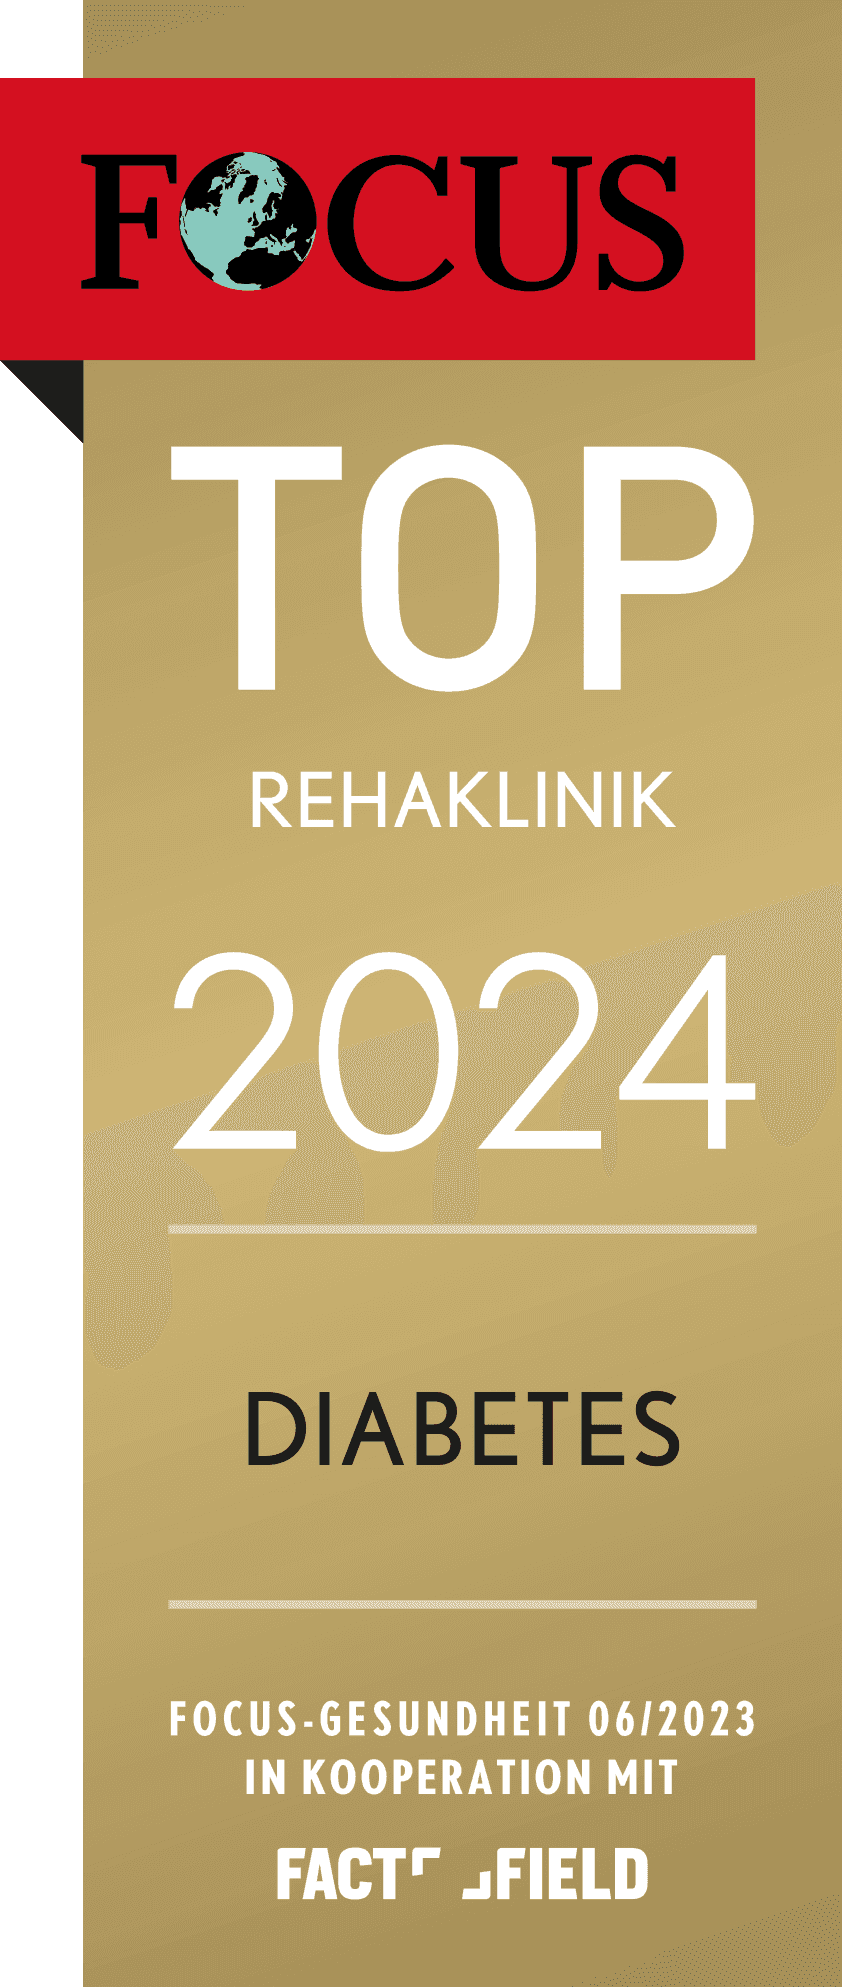 Focus-Siegel der Rehaklinik Hohenelse für das Jahr 2024 als TOP Rehaklinik im Bereich Diabetes